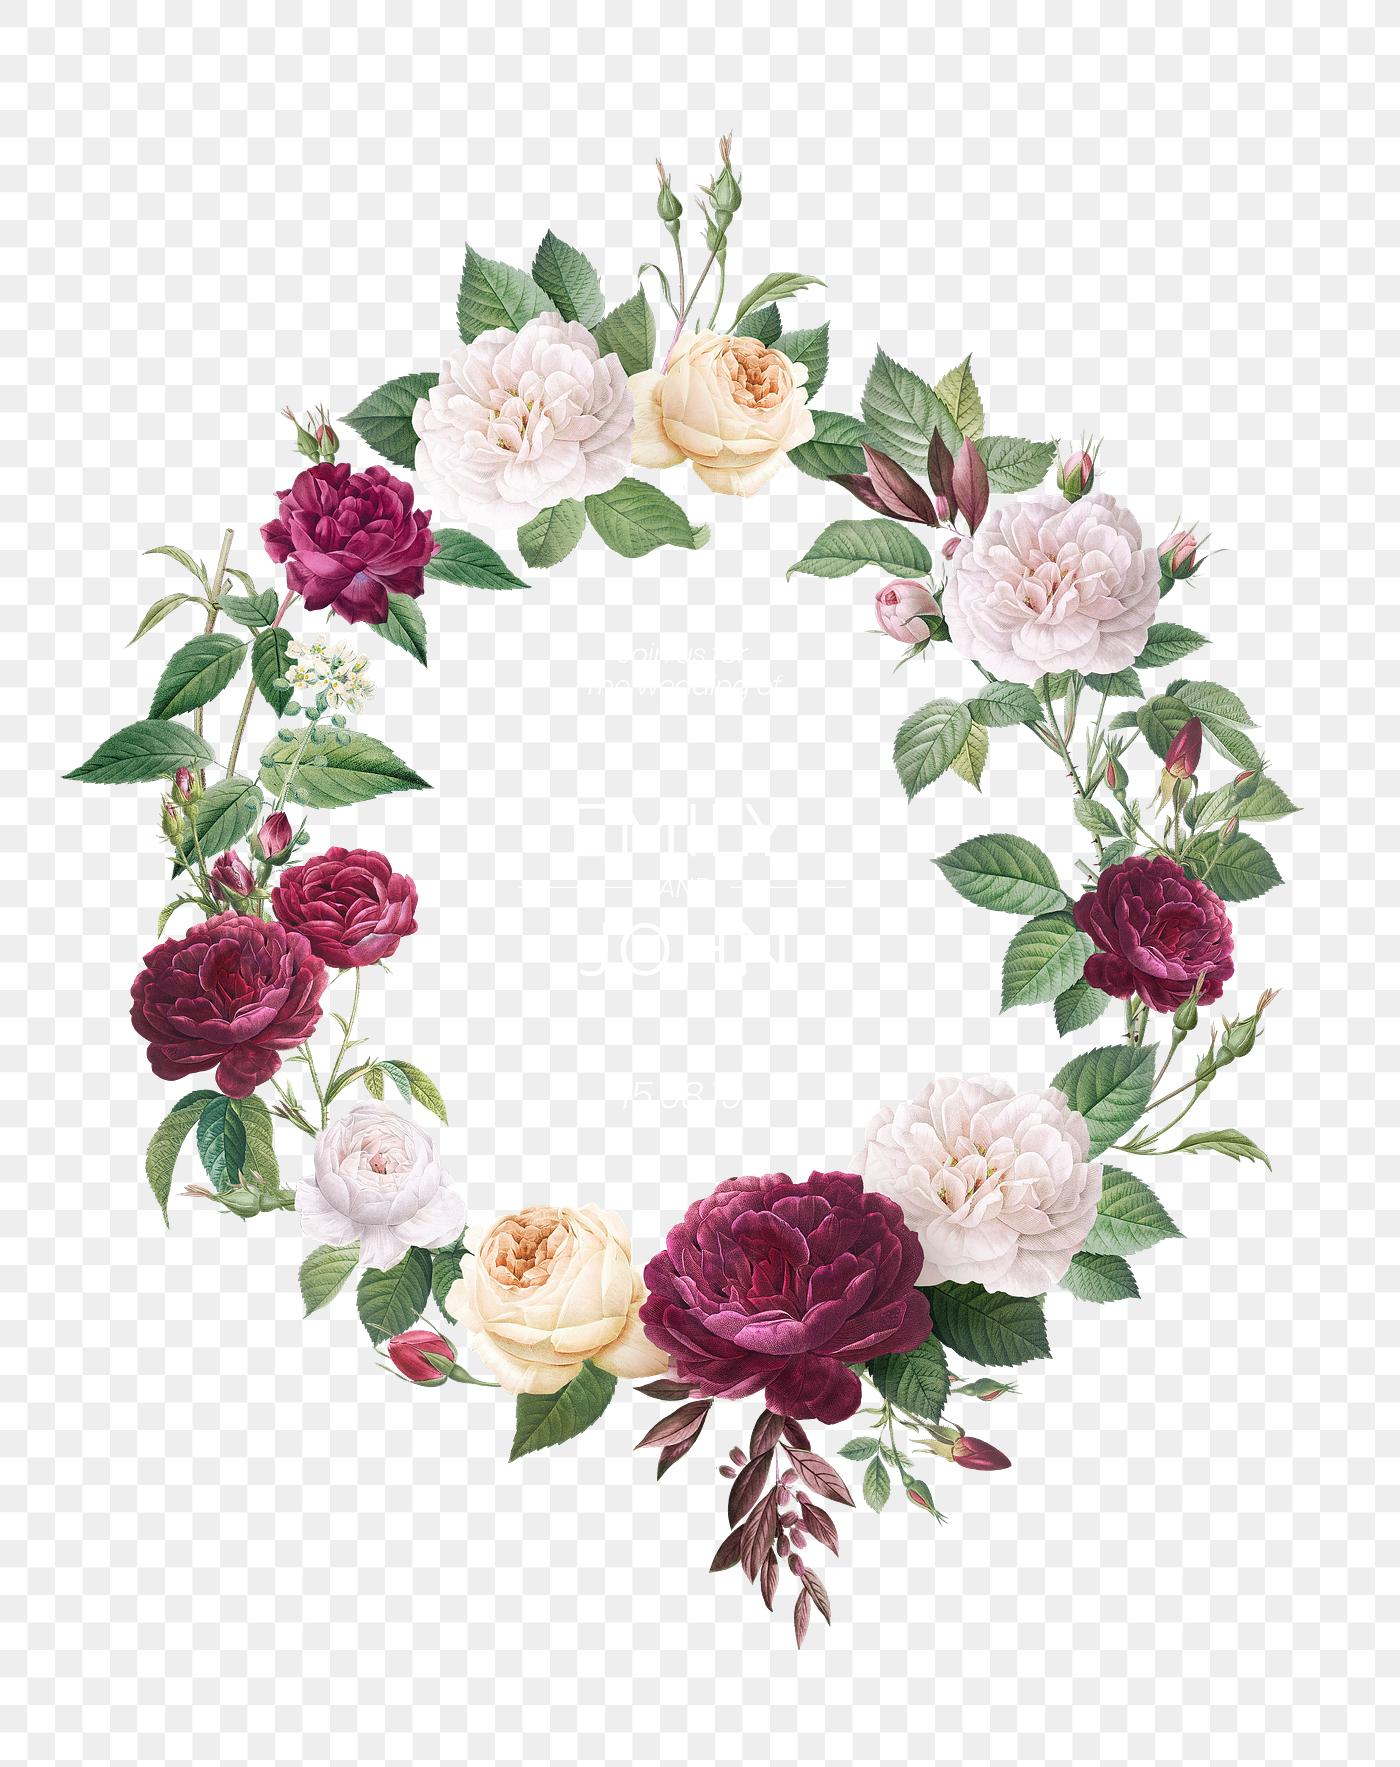 Download Floral design wedding invitation mockup | Royalty free transparent png - 581001